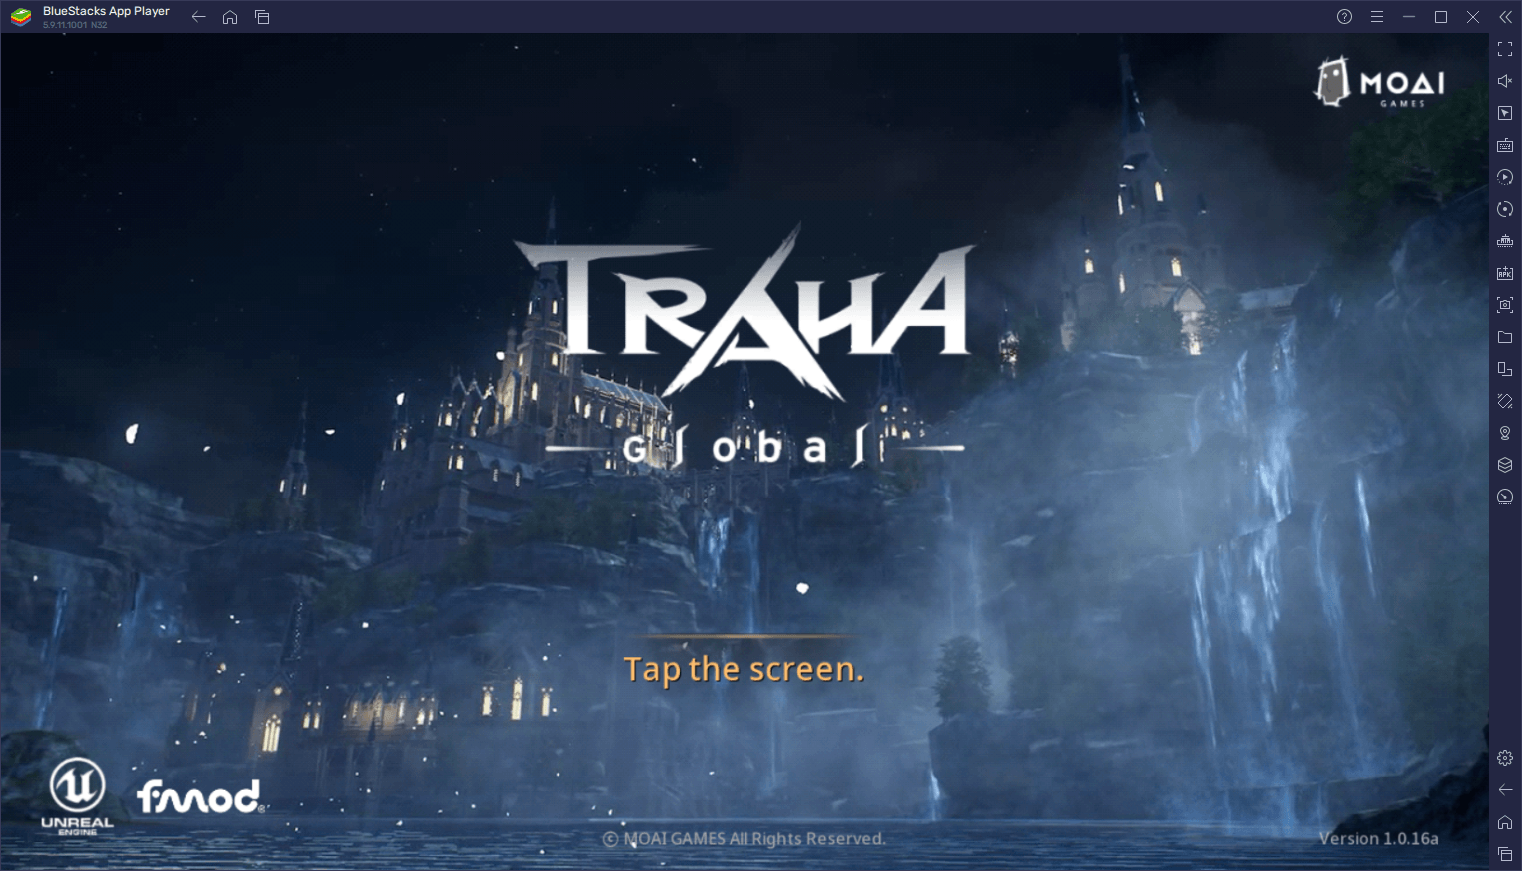 TRAHA Global para PC - Todas las expectativas del lanzamiento de este innovador MMORPG